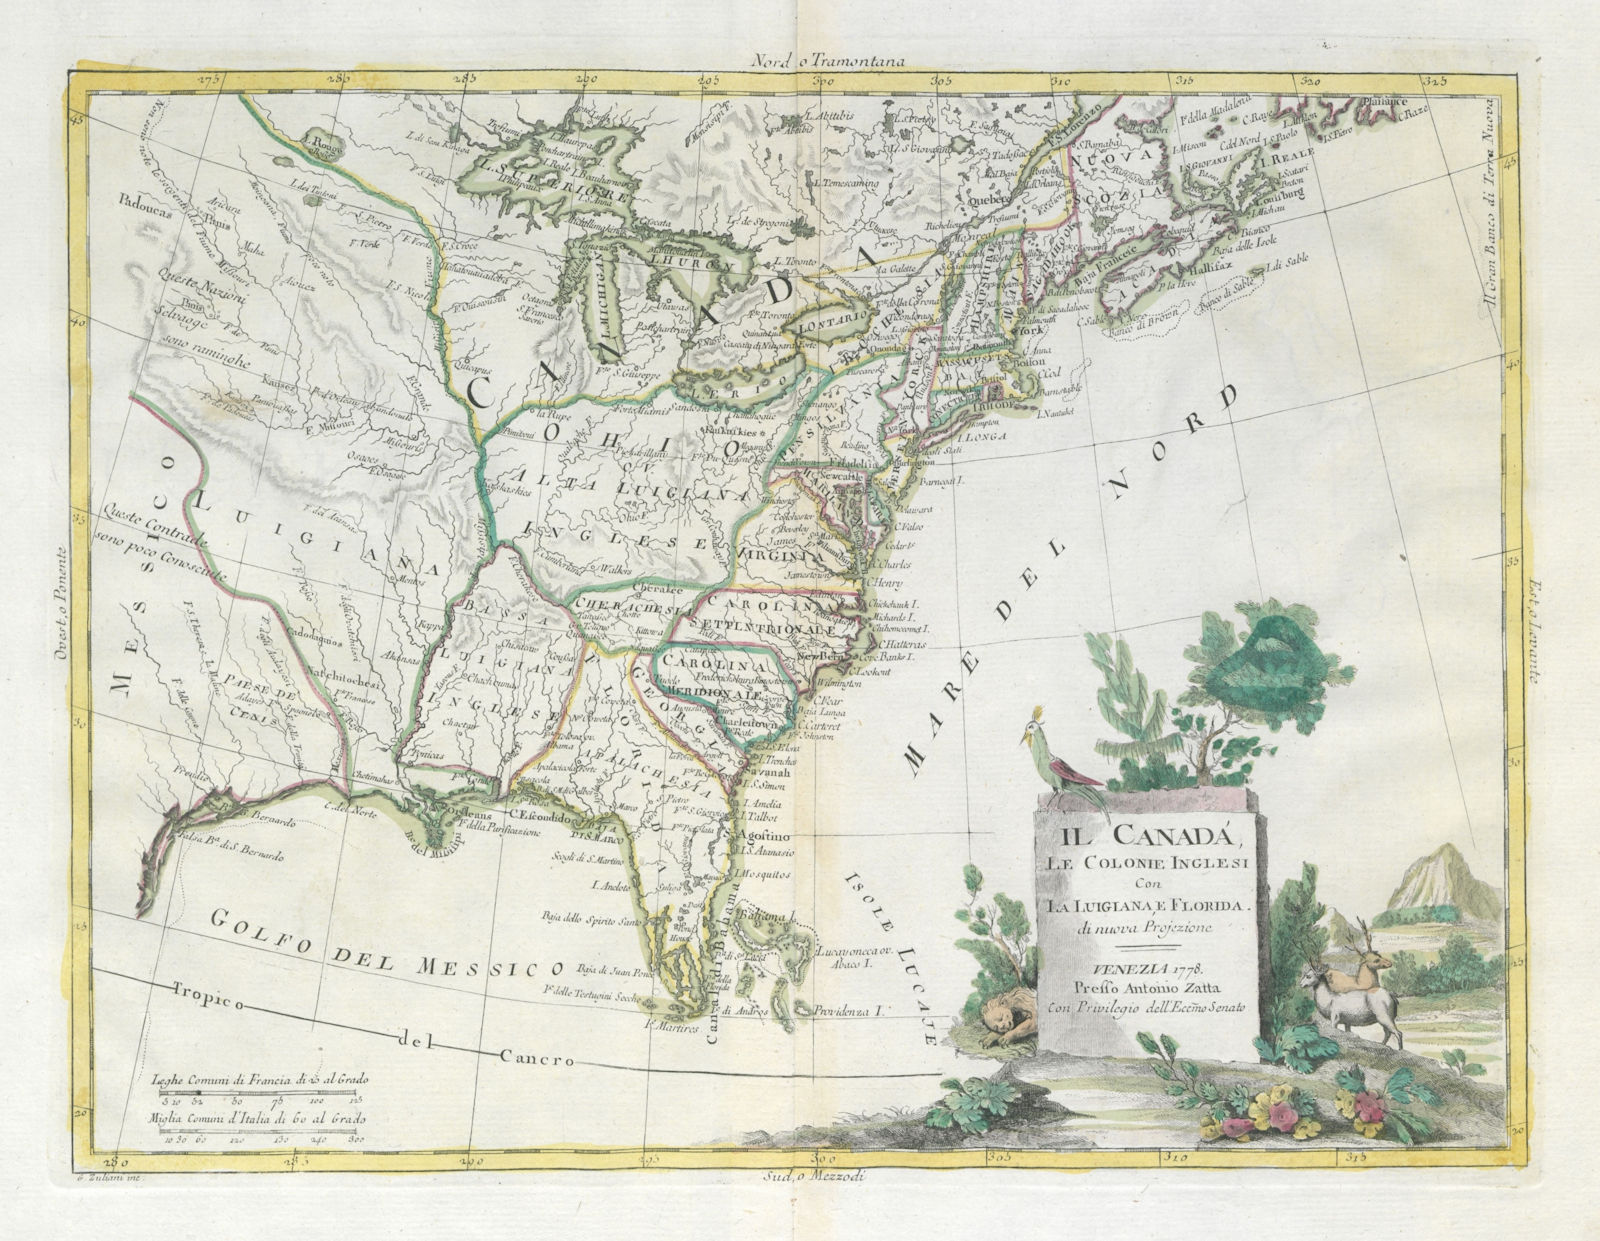 "Il Canada, le Colonie Inglesi con la Luigiana, e Florida". USA. ZATTA 1779 map